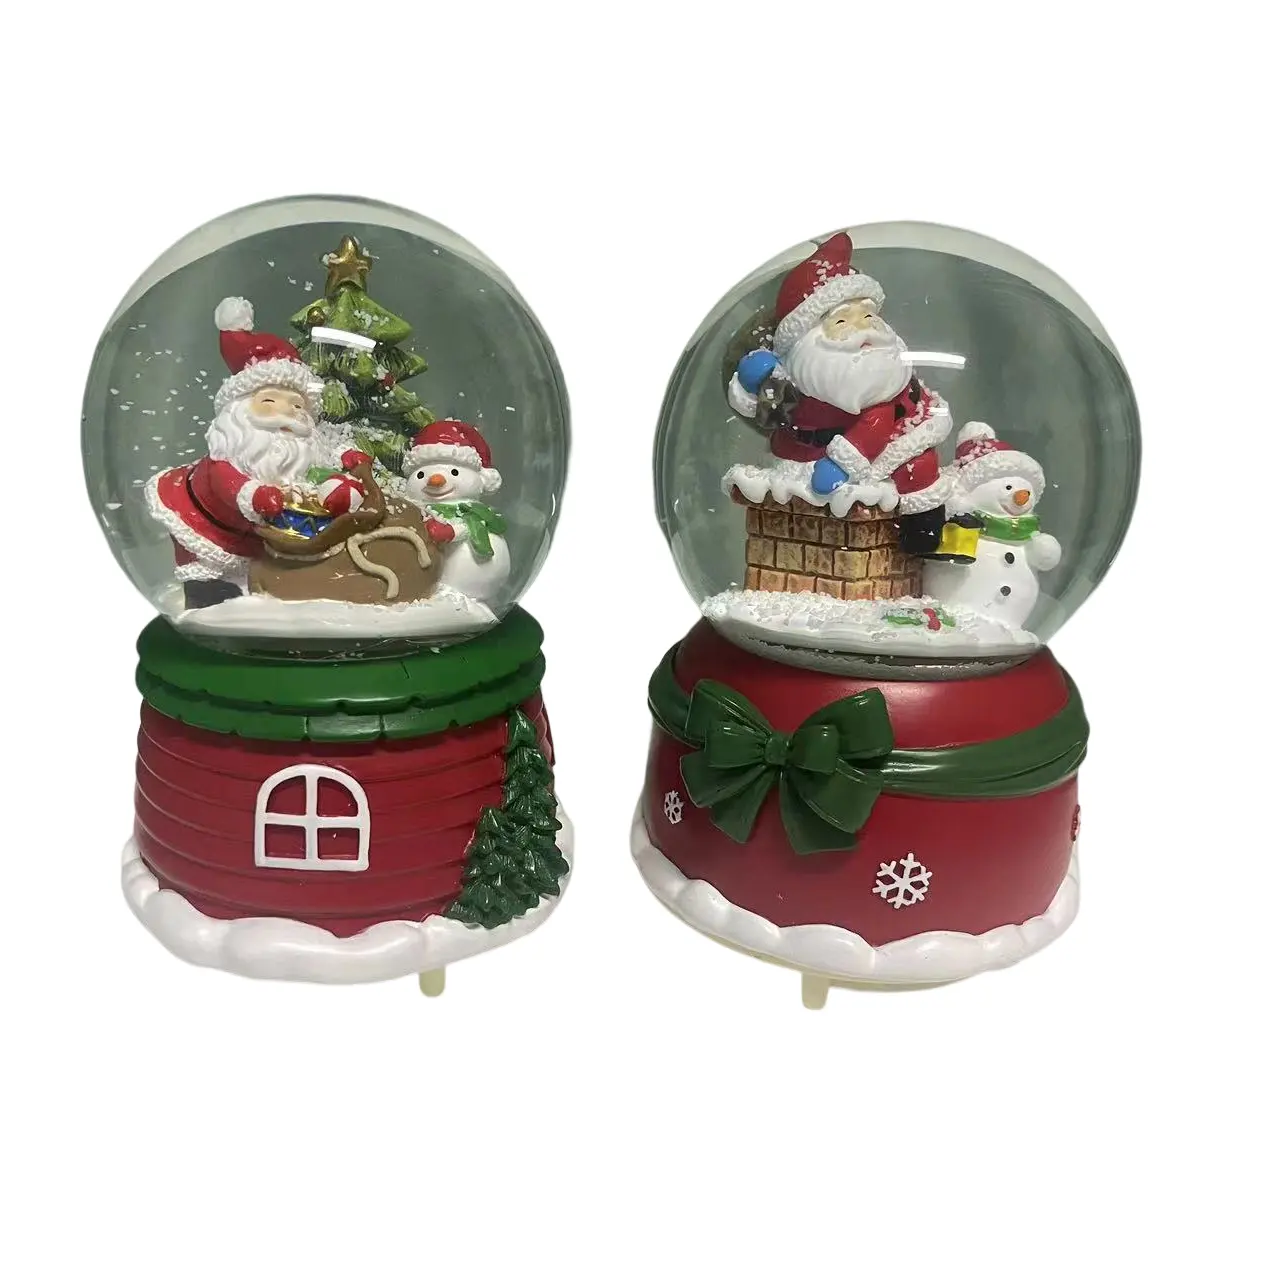 Caixa de música para boneco de neve de Natal, artesanato em resina, balões de água com luzes, globo de neve de vidro e mudança de cor, bola de cristal